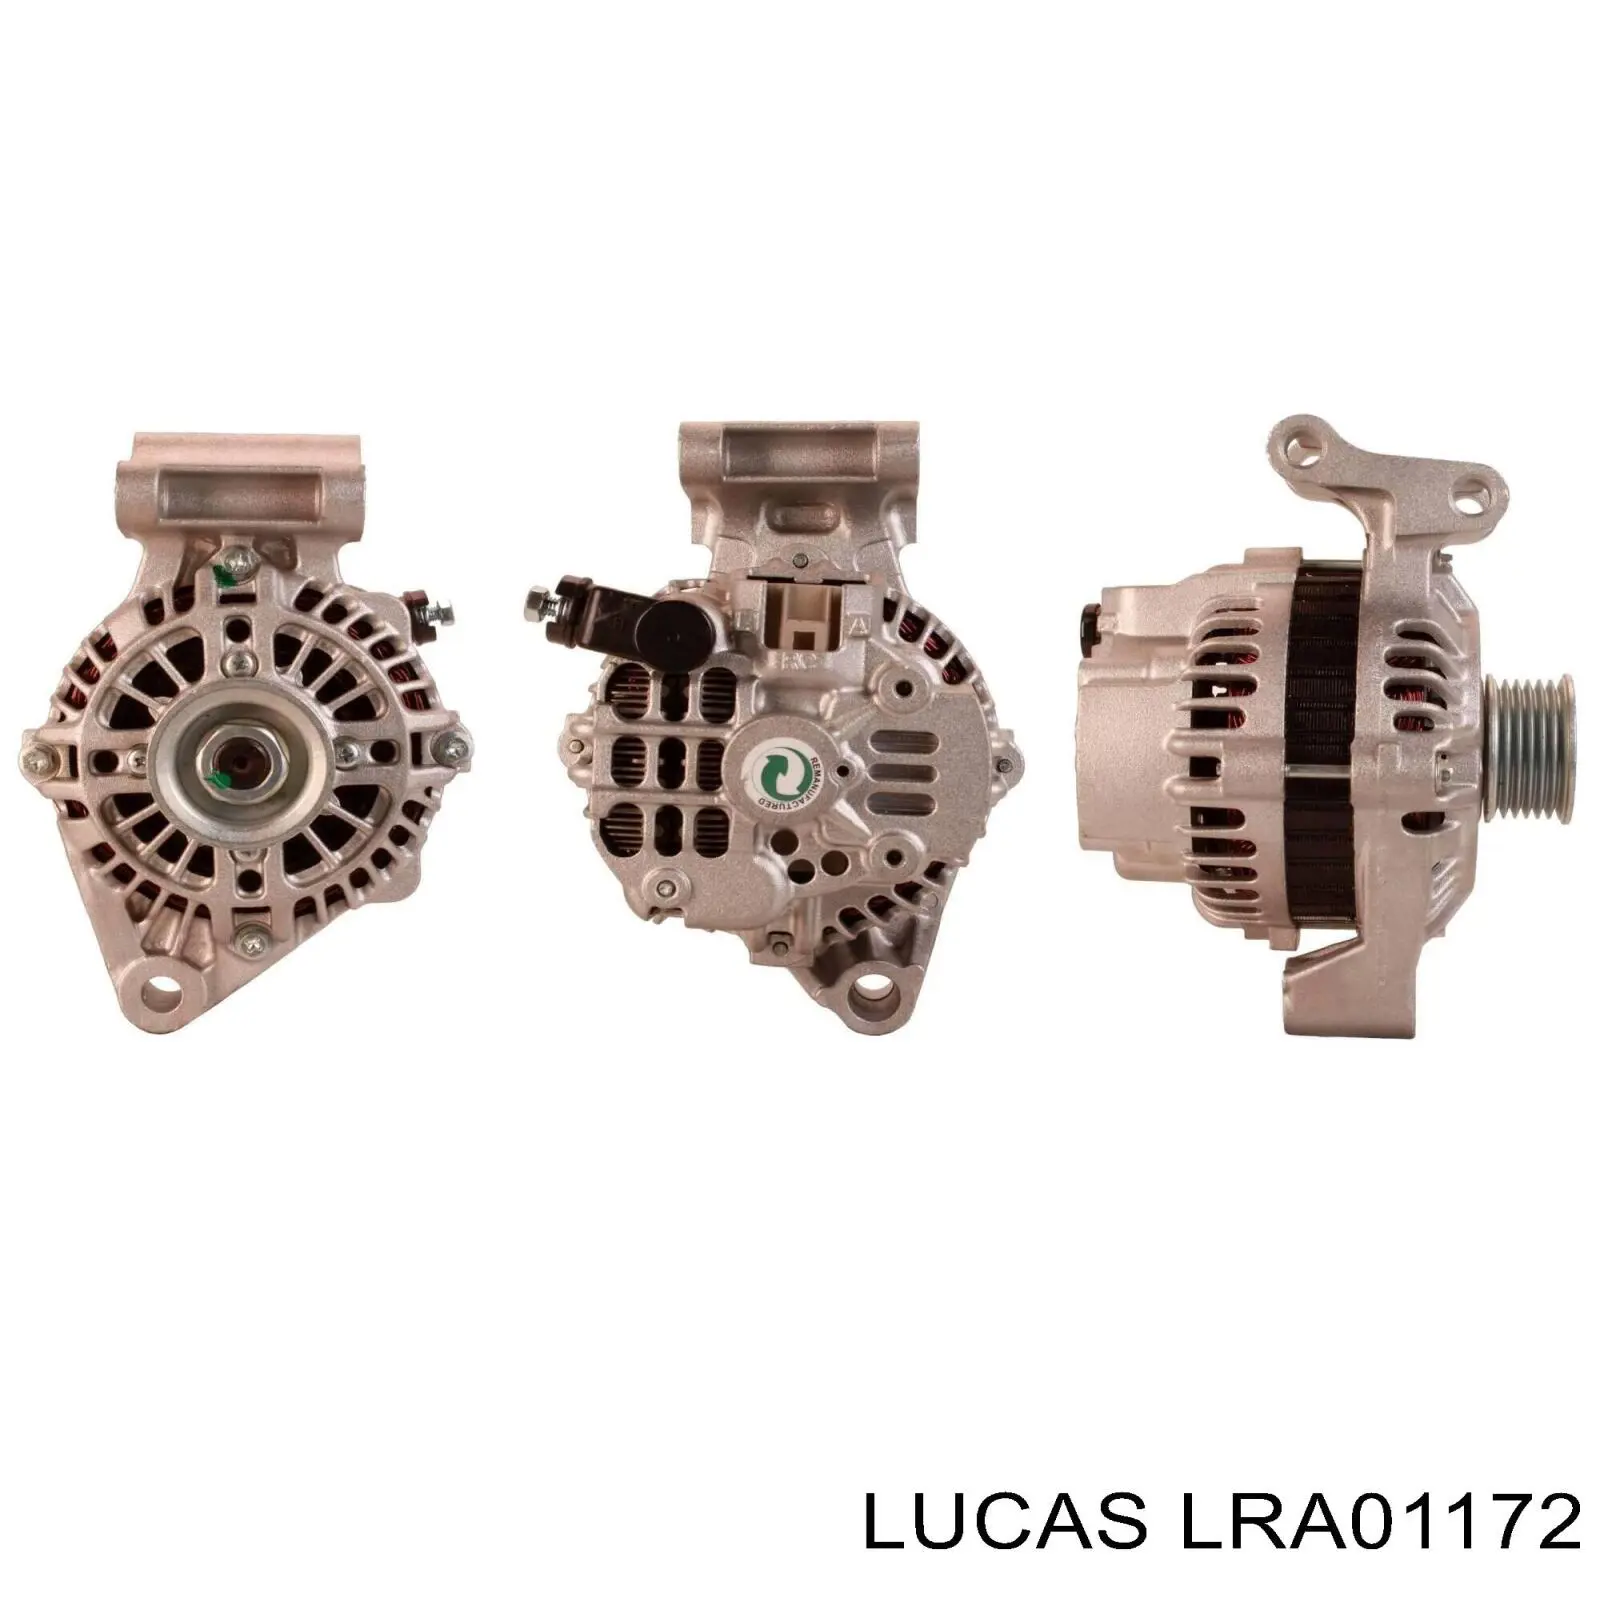 LRA01172 Lucas генератор